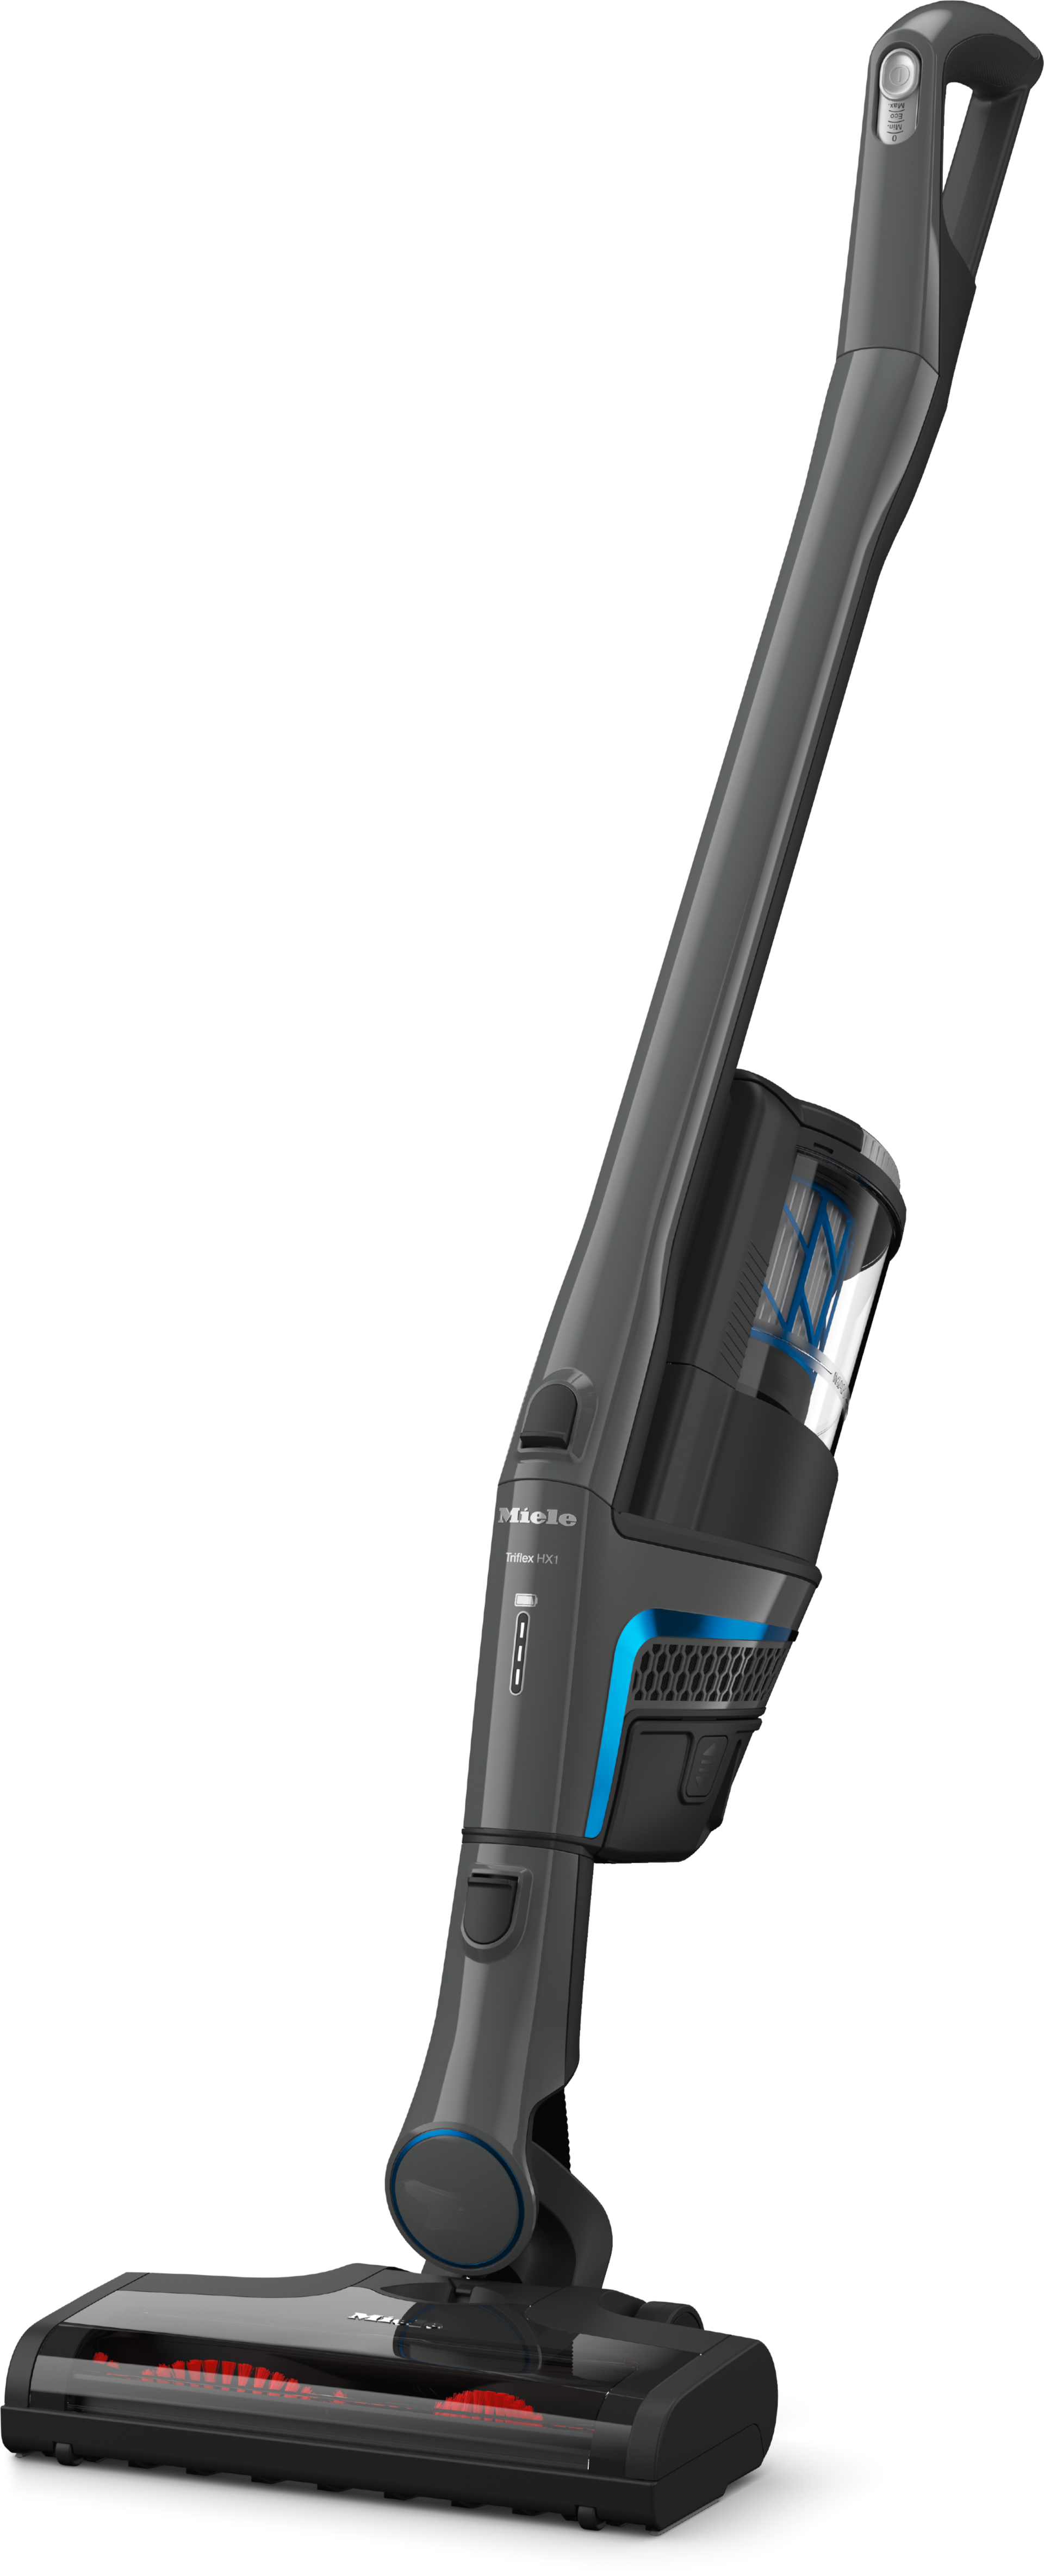 Aspirateurs - Triflex HX1 Facelift Gris graphite - 3